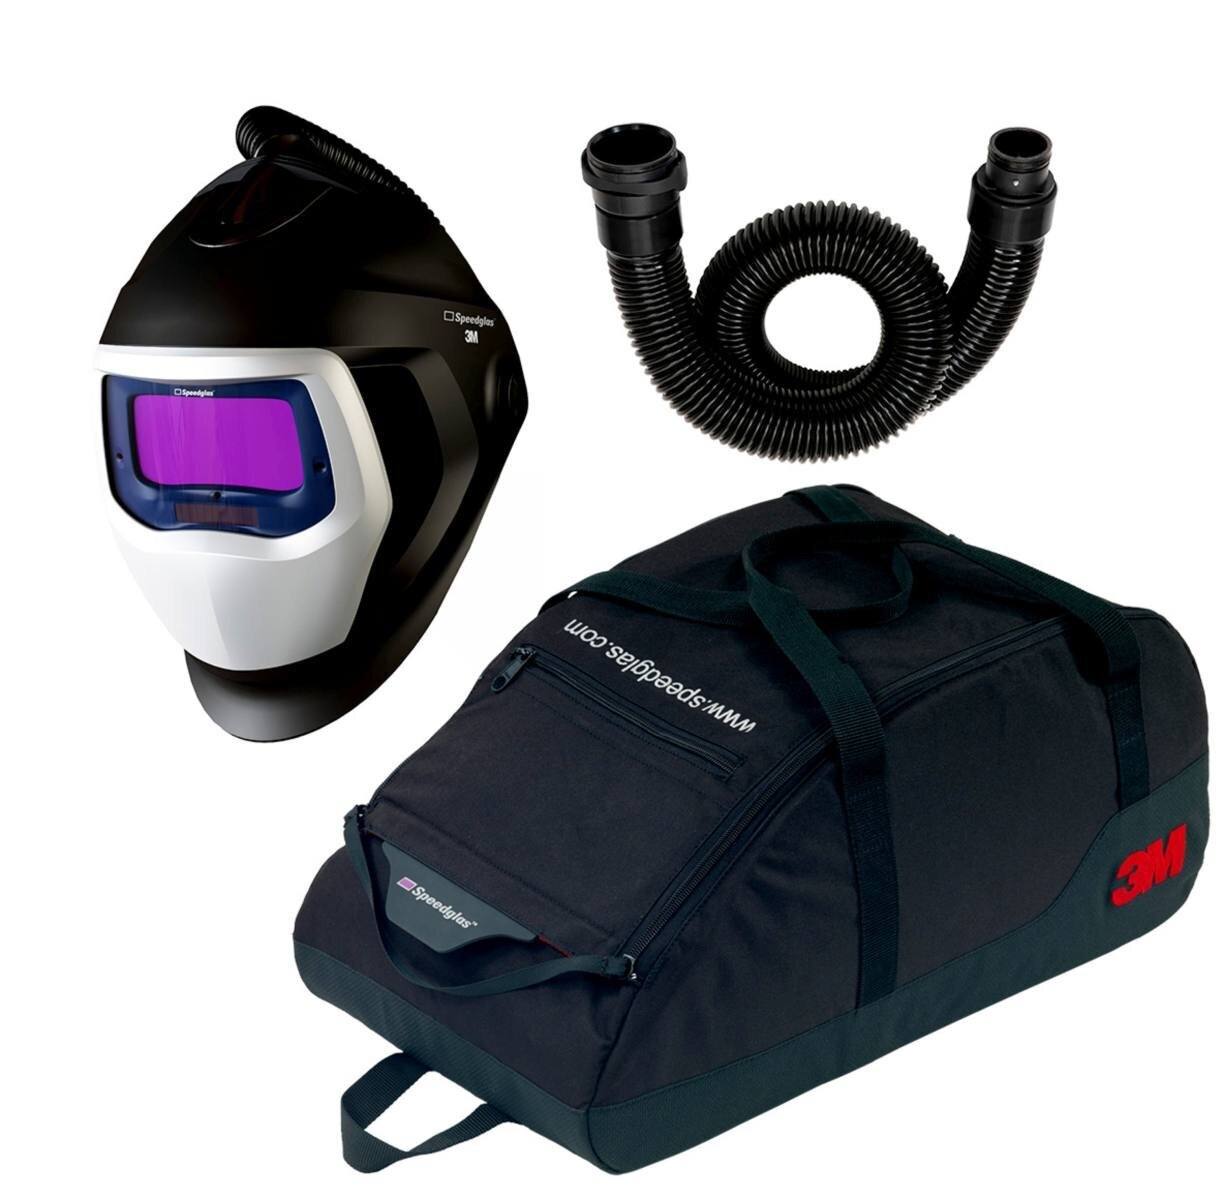 Masque de soudure 3M Speedglas 9100 Air avec 9100V ADF, tuyau d'air inclus, sac de rangement inclus 79 01 01 - TH2 - Kit de mise à niveau #569005